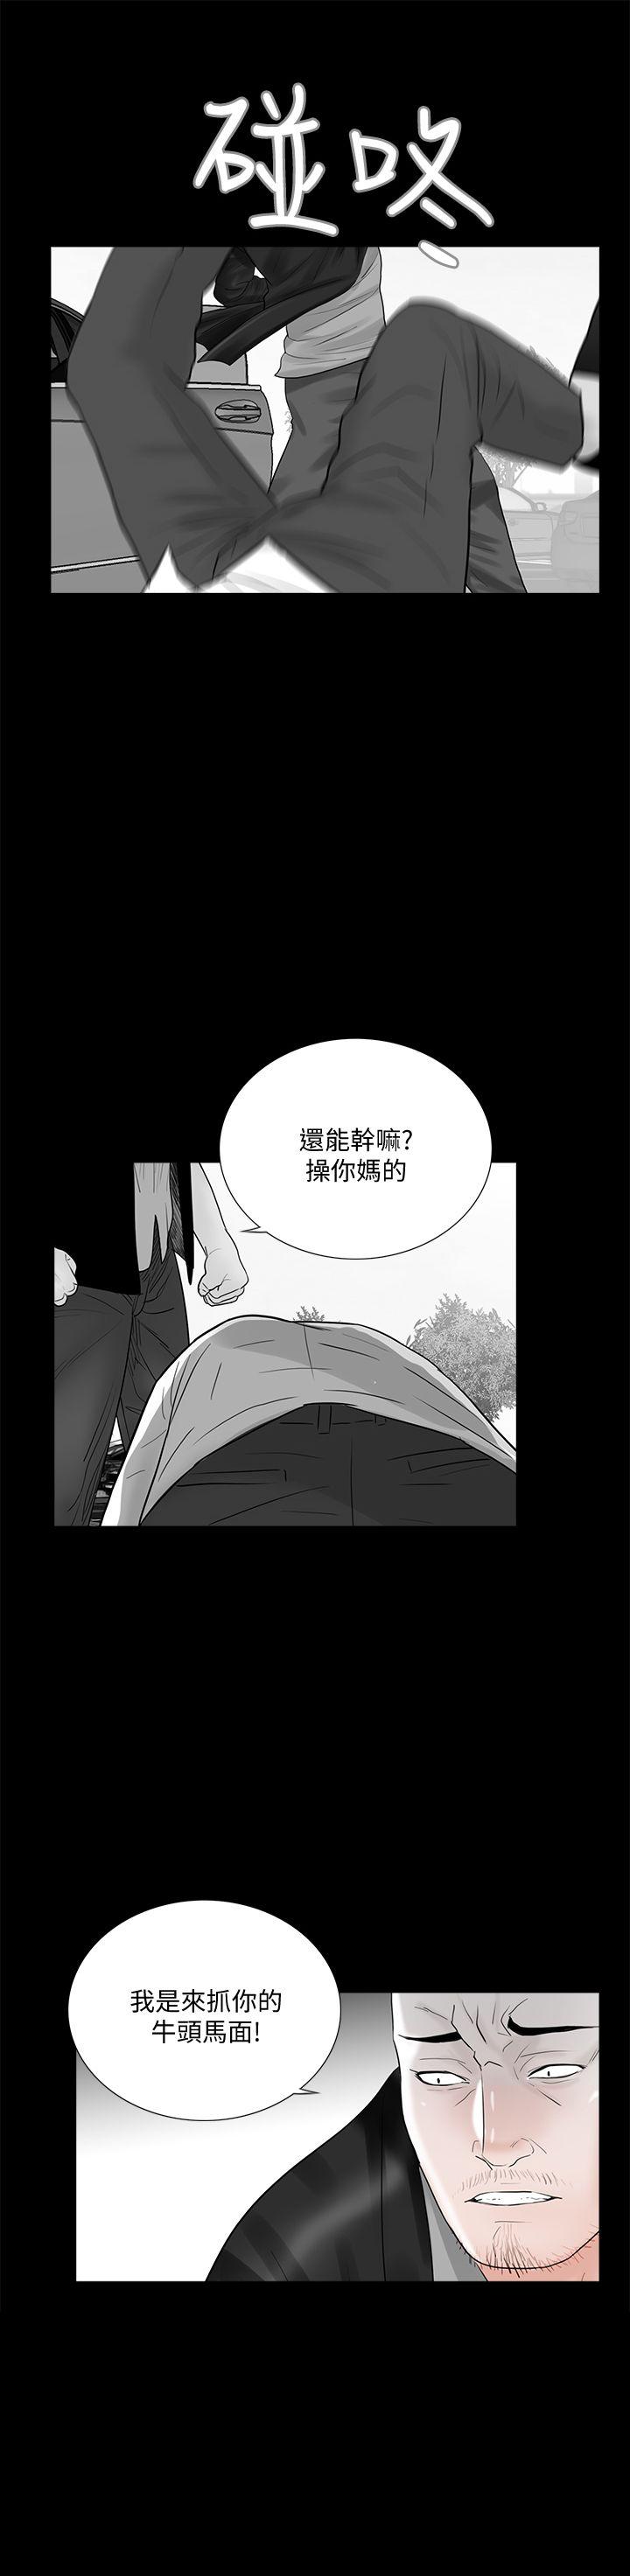 韩国污漫画 夢魘 第45话-真书的未婚夫(03) 1